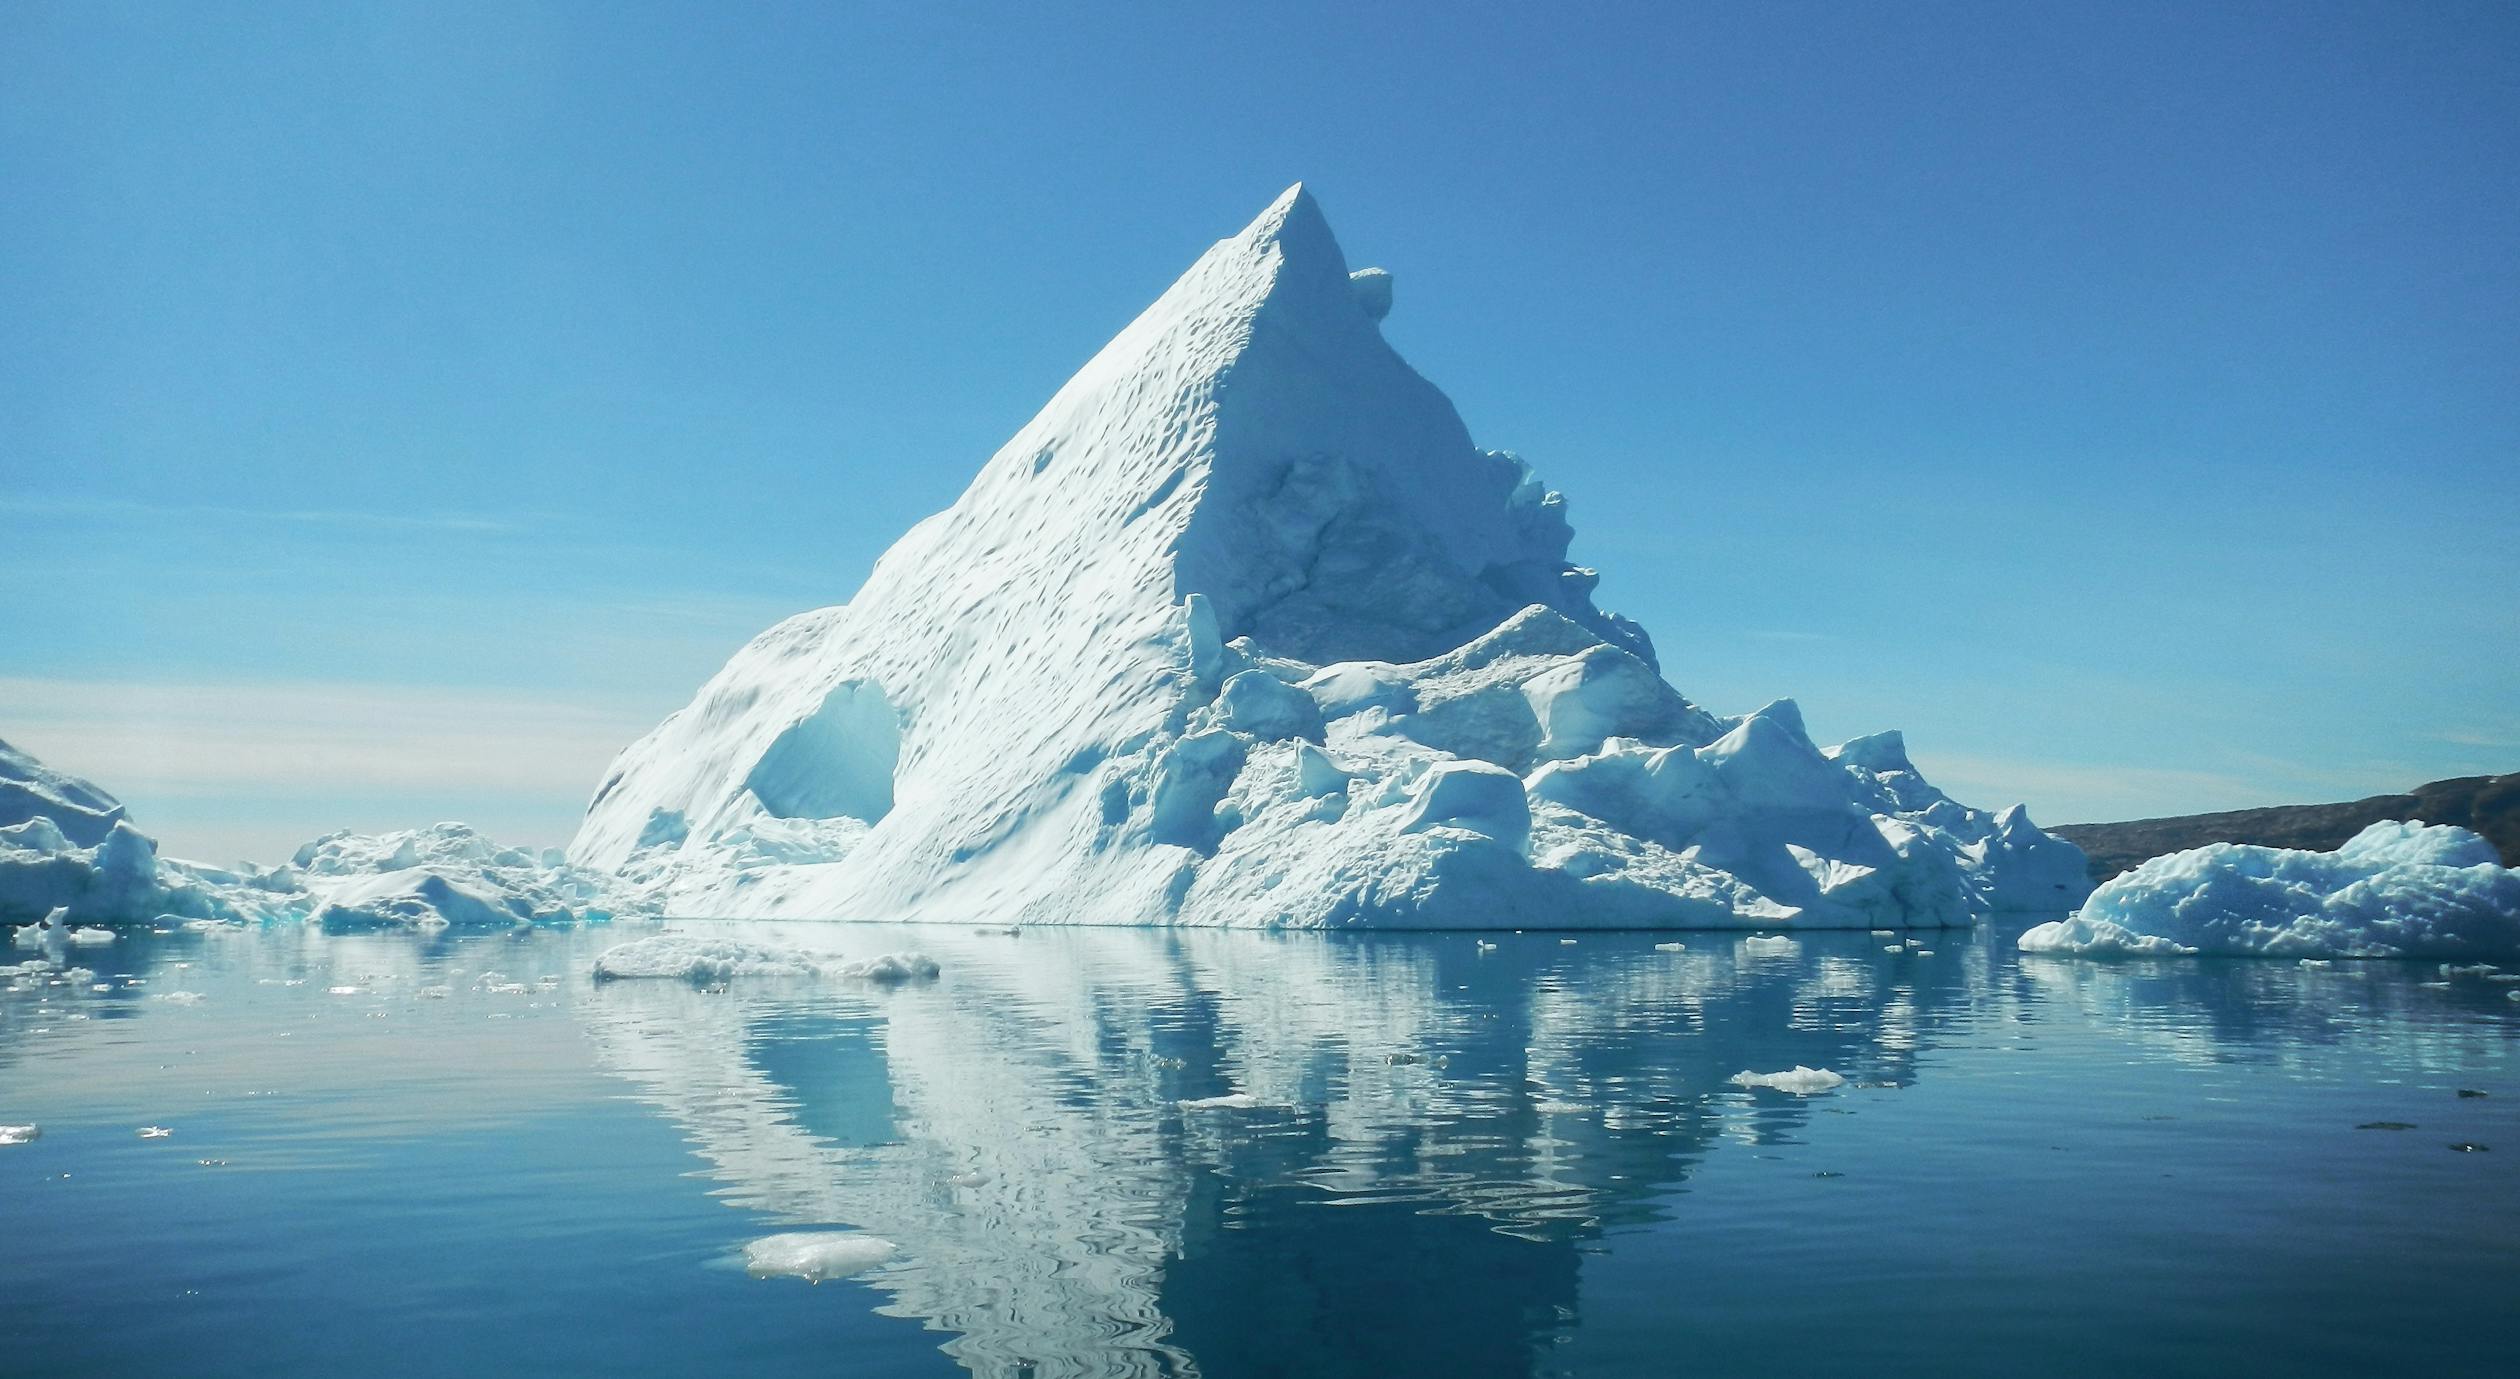 Әлемдегі ең үлкен айсберг жойылып кетуі мүмкін